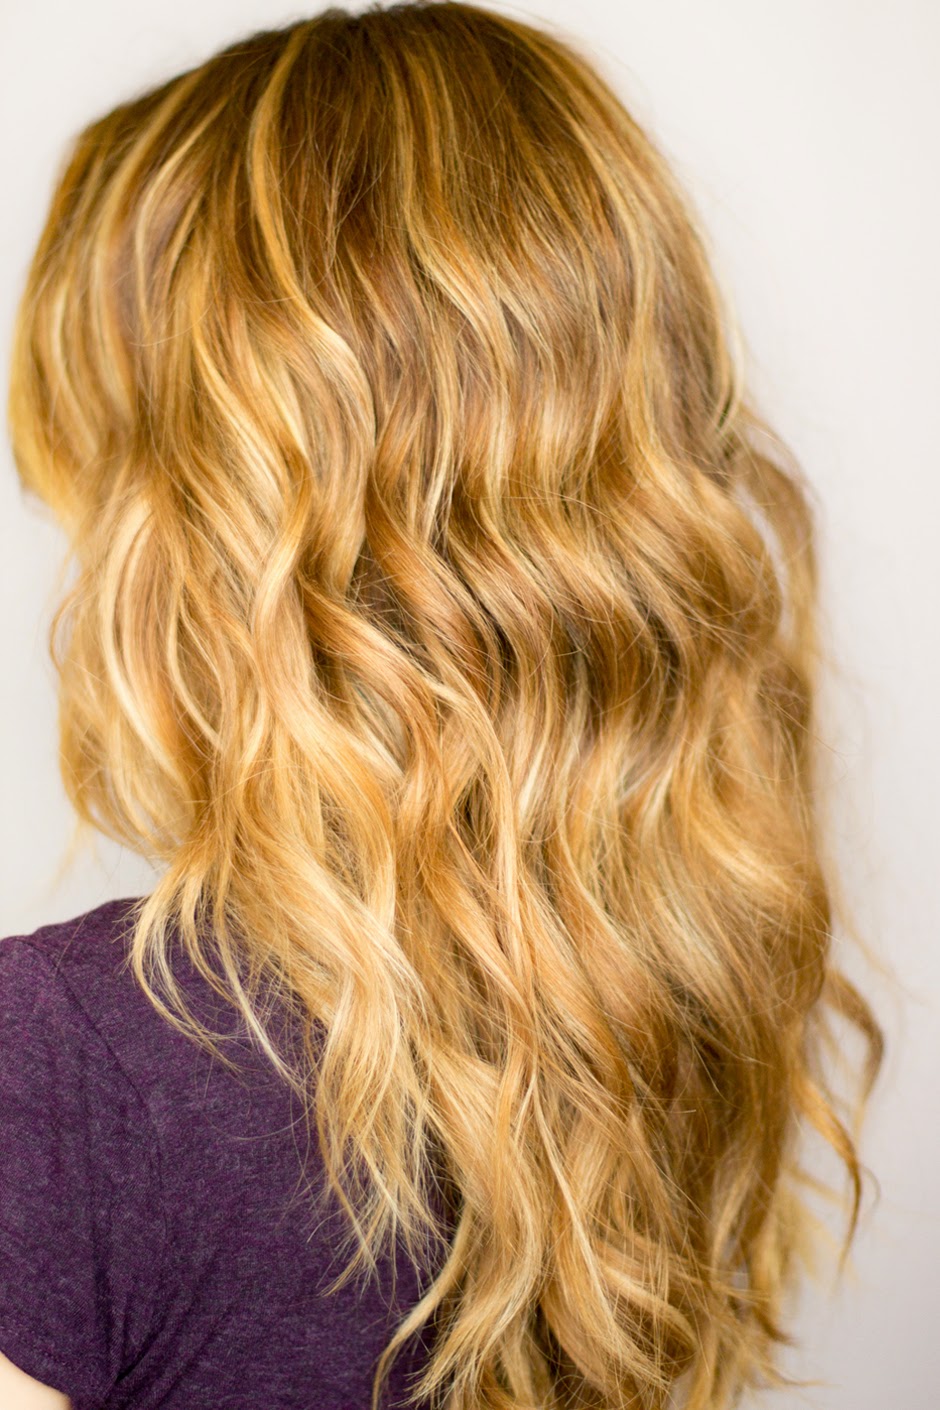 24 ways to get wavy hair